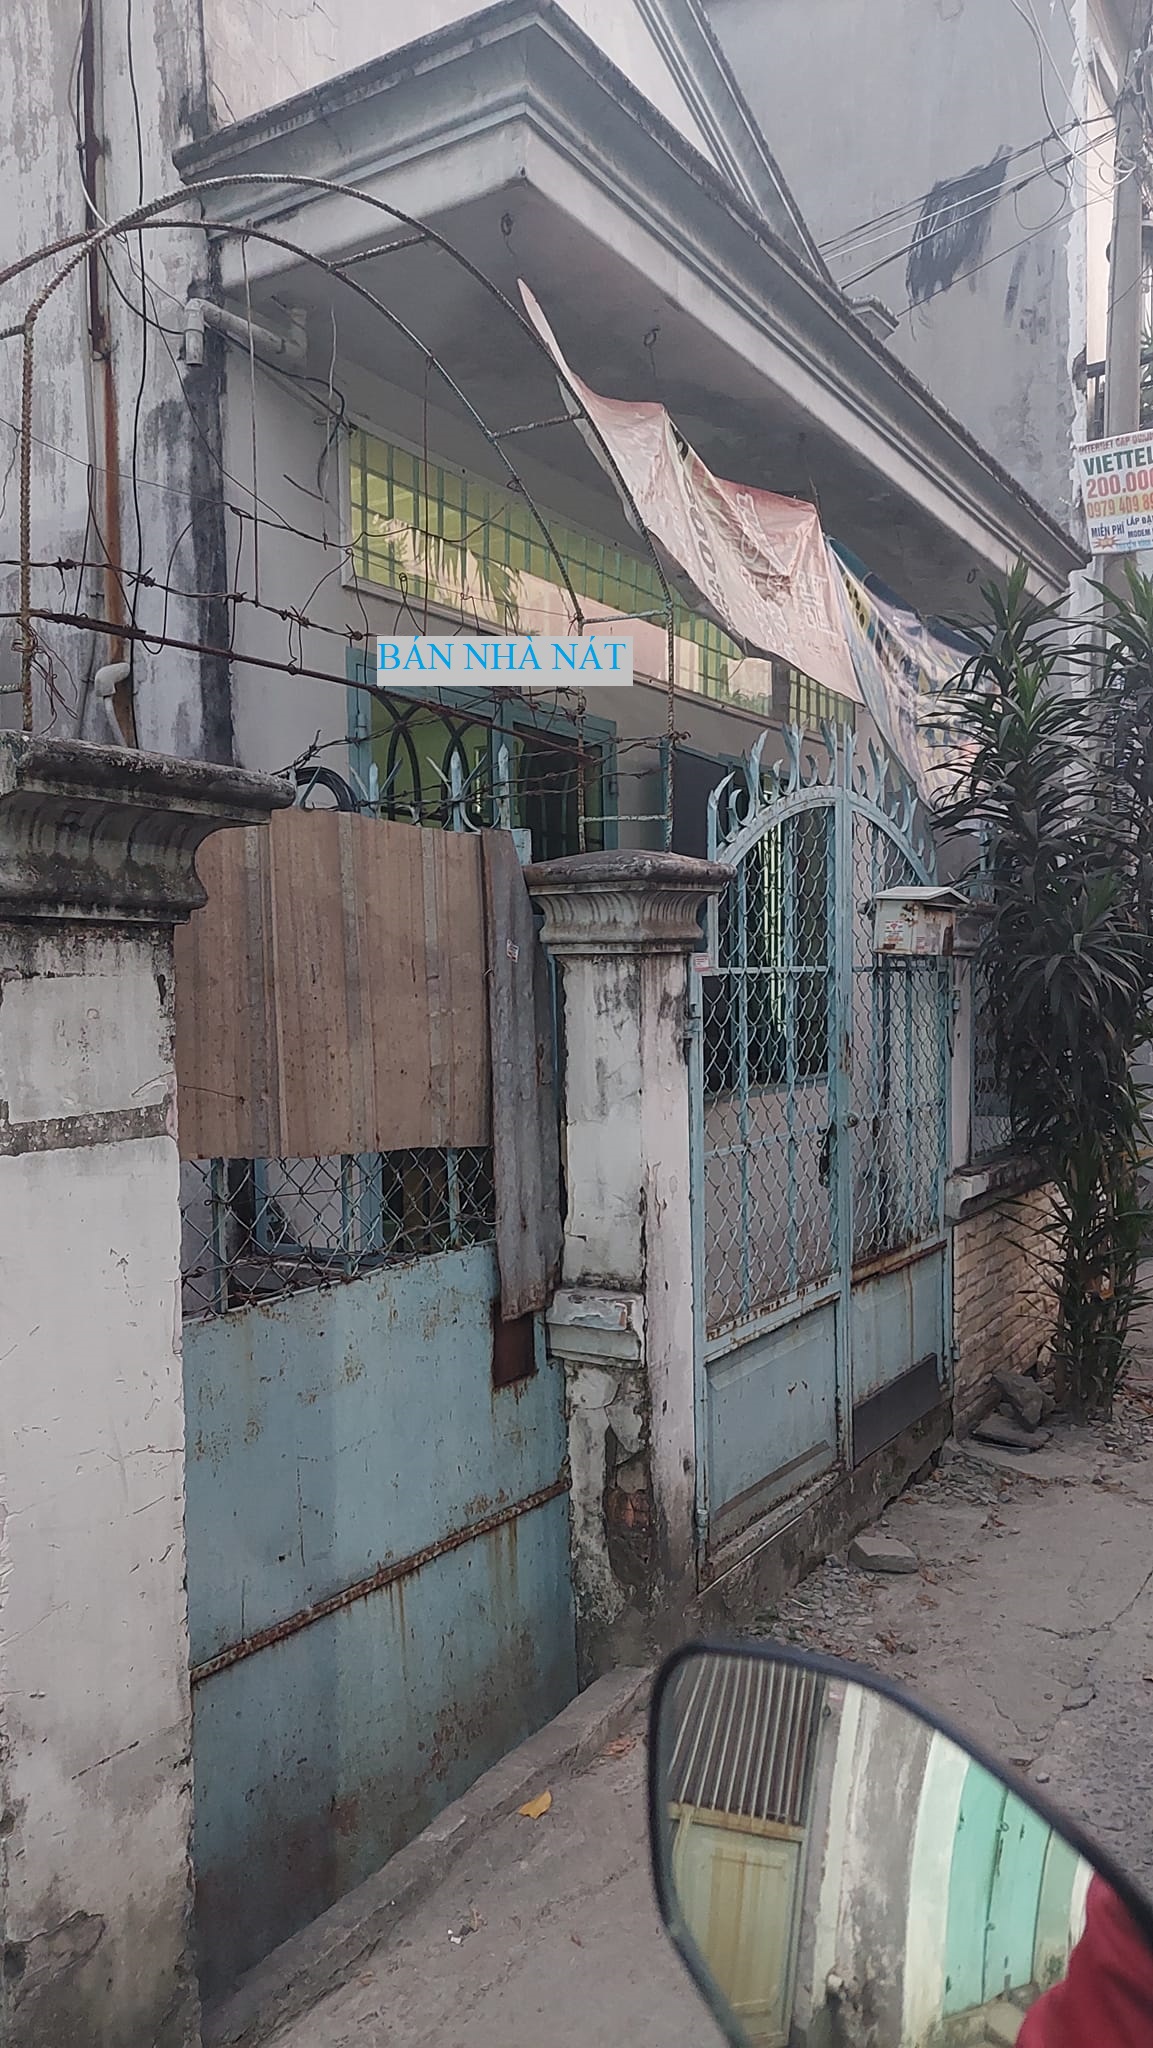 Bán nhà nát tiền siêu nhỏ cấp tiểu học, diện tích to 121m2, Lê Văn Khương, Quận 12